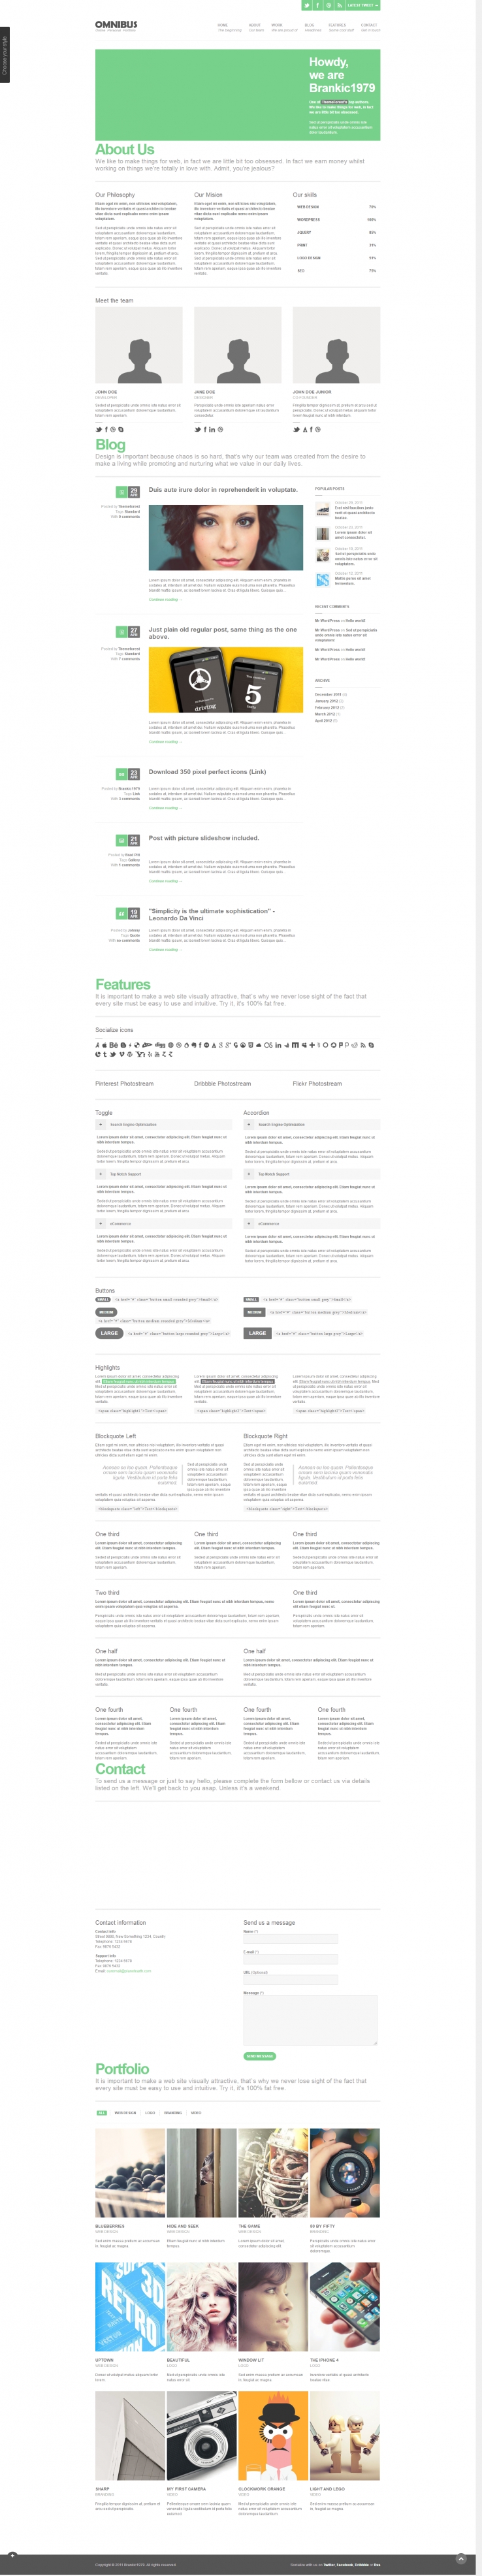 绿色大气风格的设计团队博客CSS网站模板